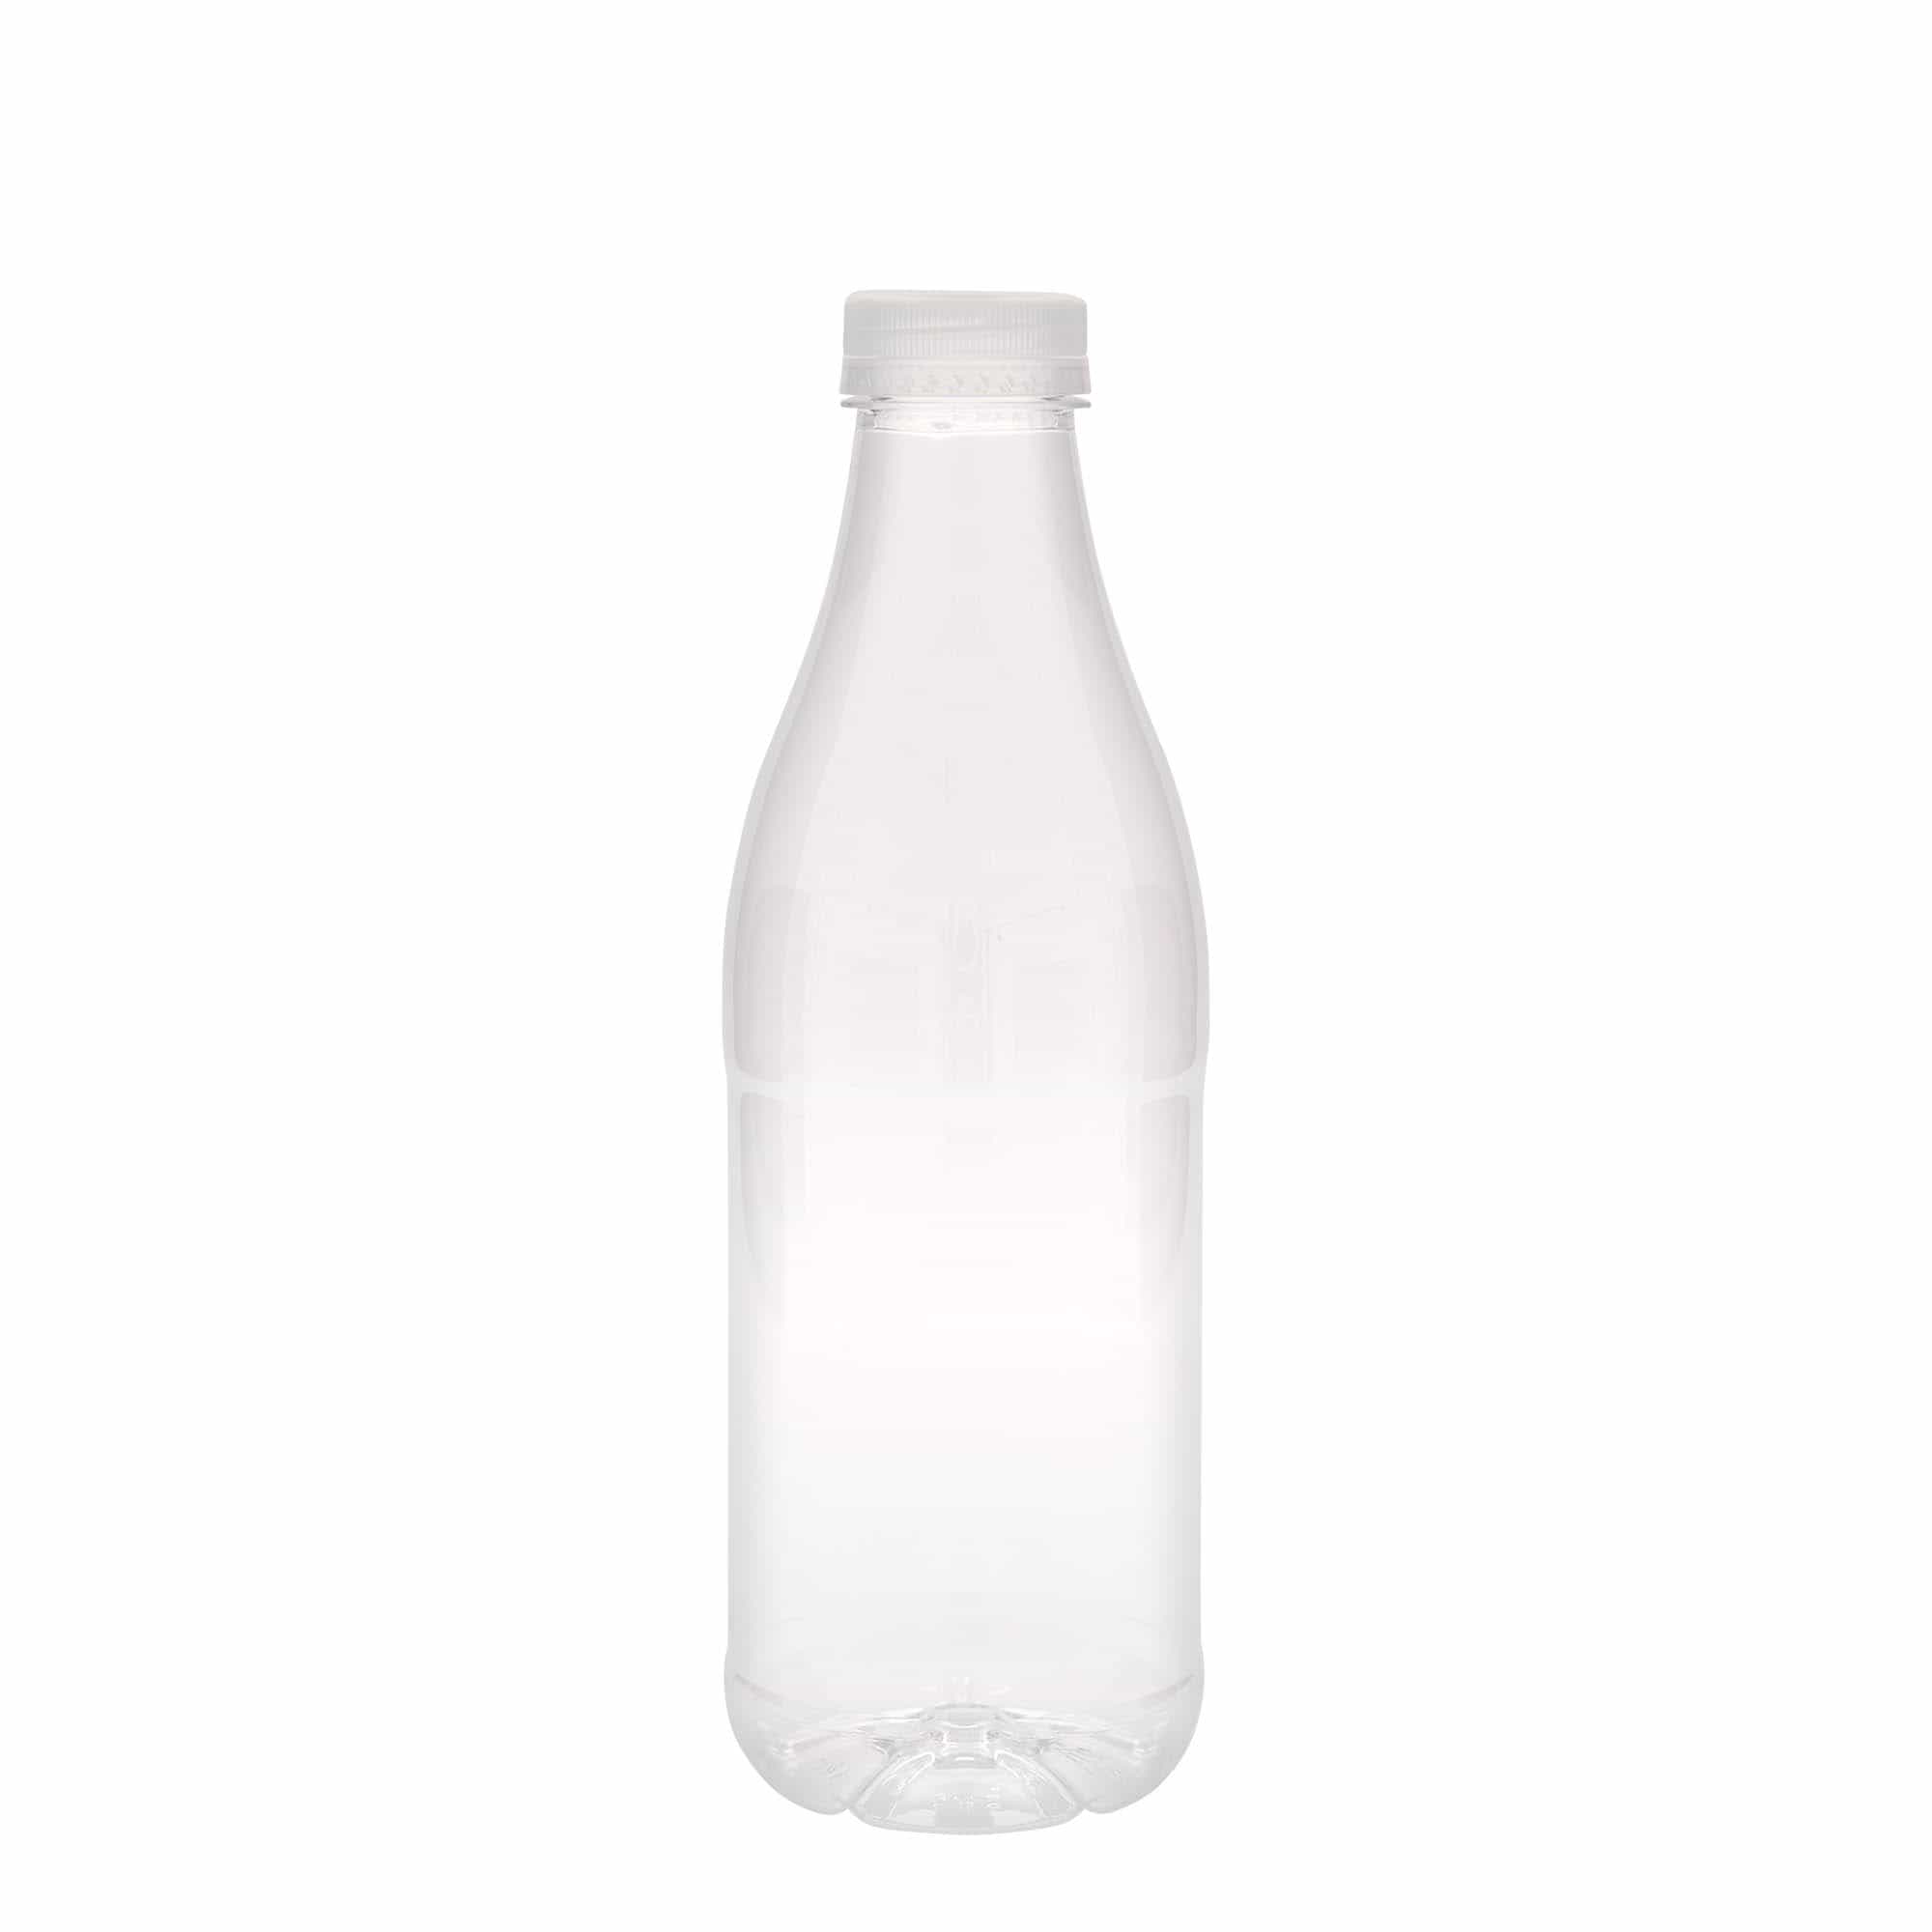 1,000 ml PET bottle 'Milk and Juice', plastic, closure: 38 mm